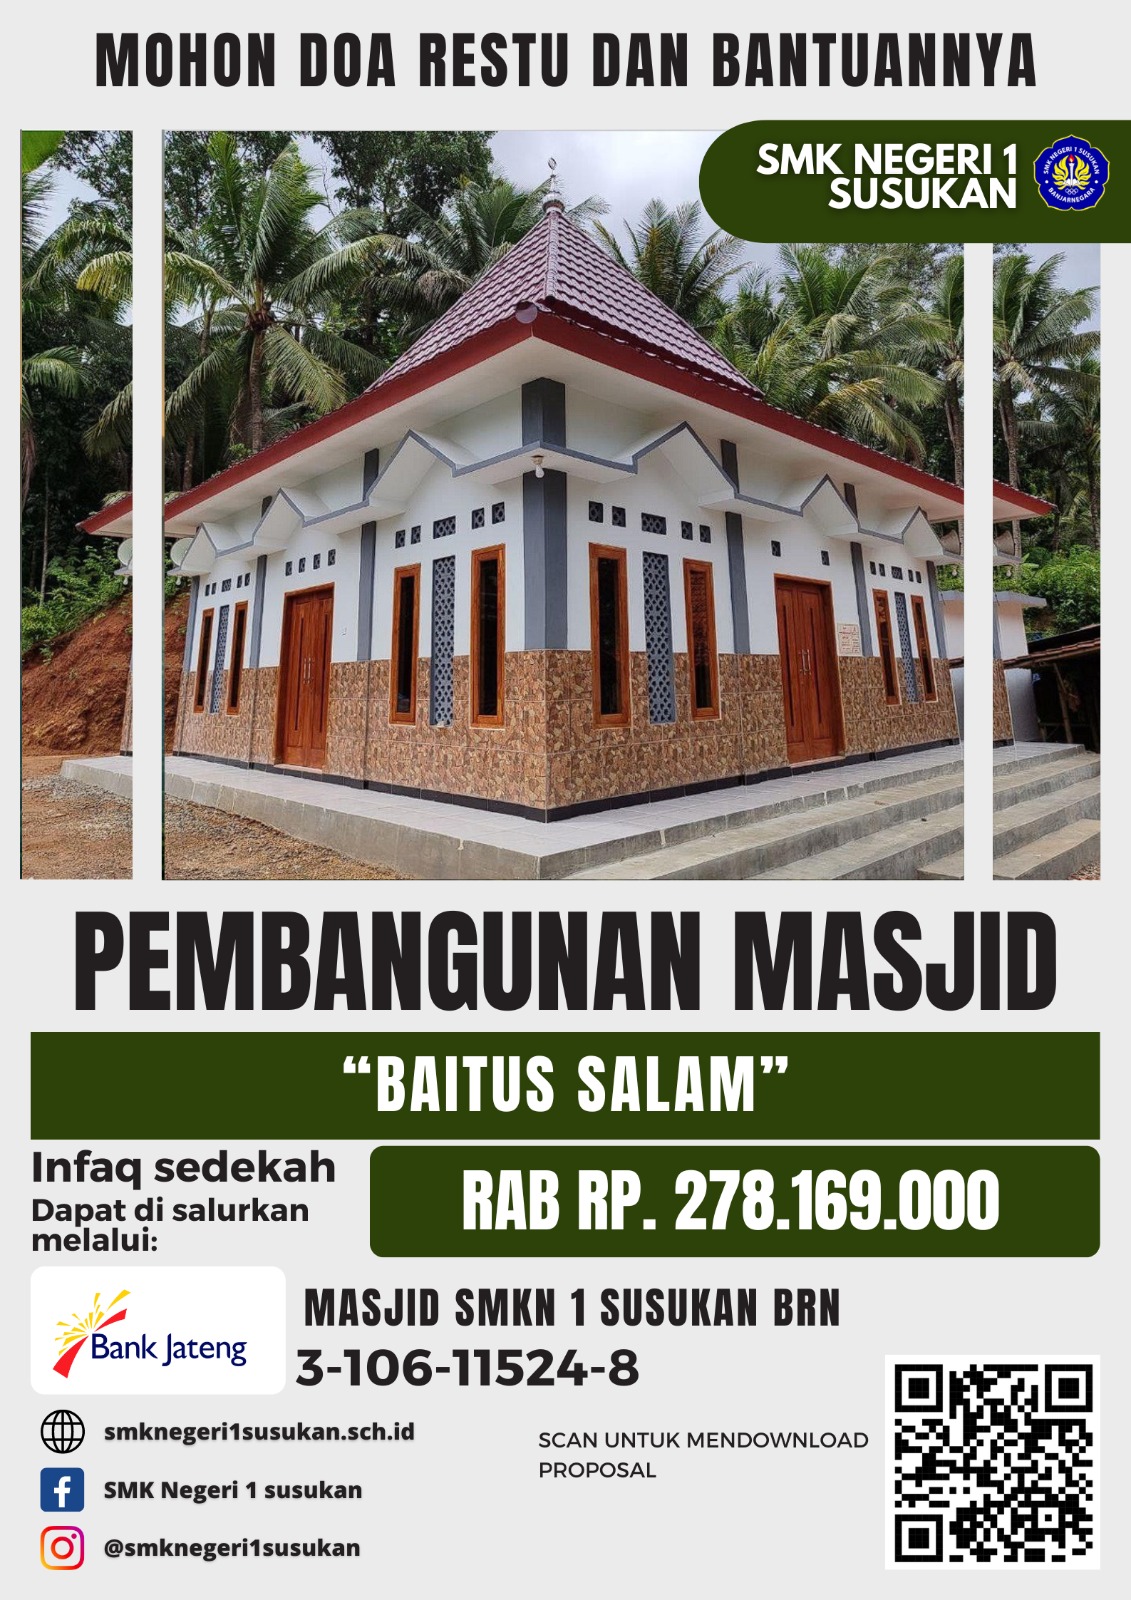 L1 - Masjid SMK